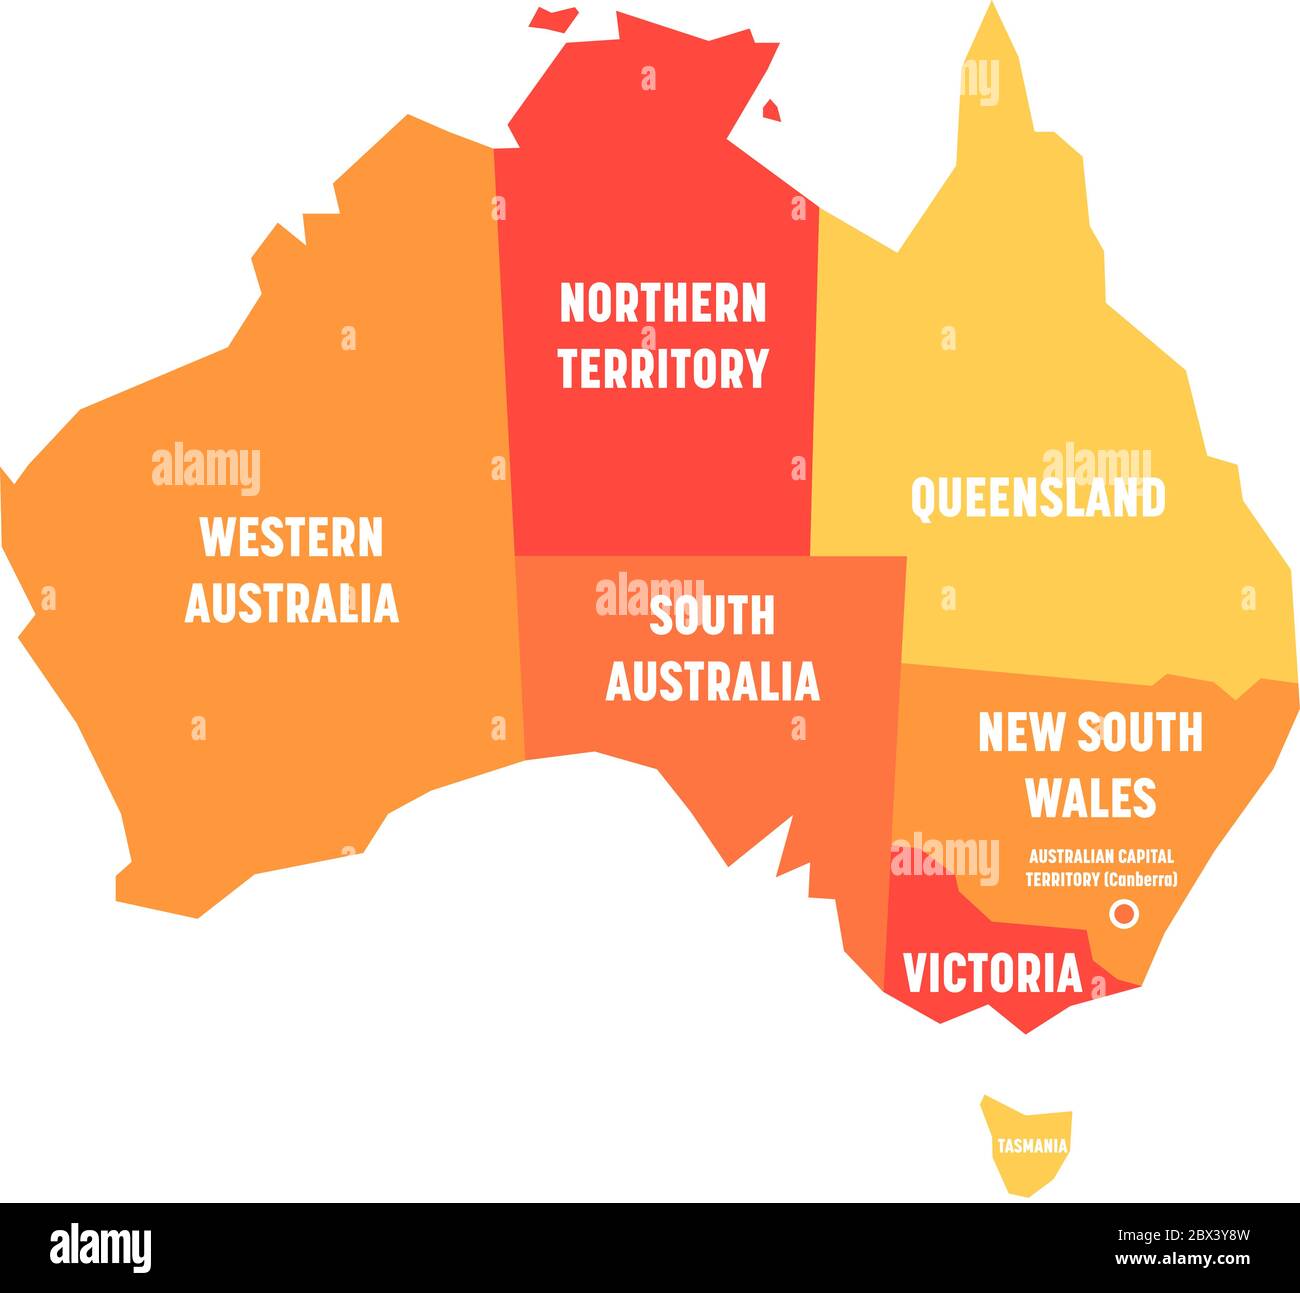 Carte simplifiée de l'Australie divisée en États et territoires. Carte plate orange avec étiquettes blanches. Illustration vectorielle. Illustration de Vecteur